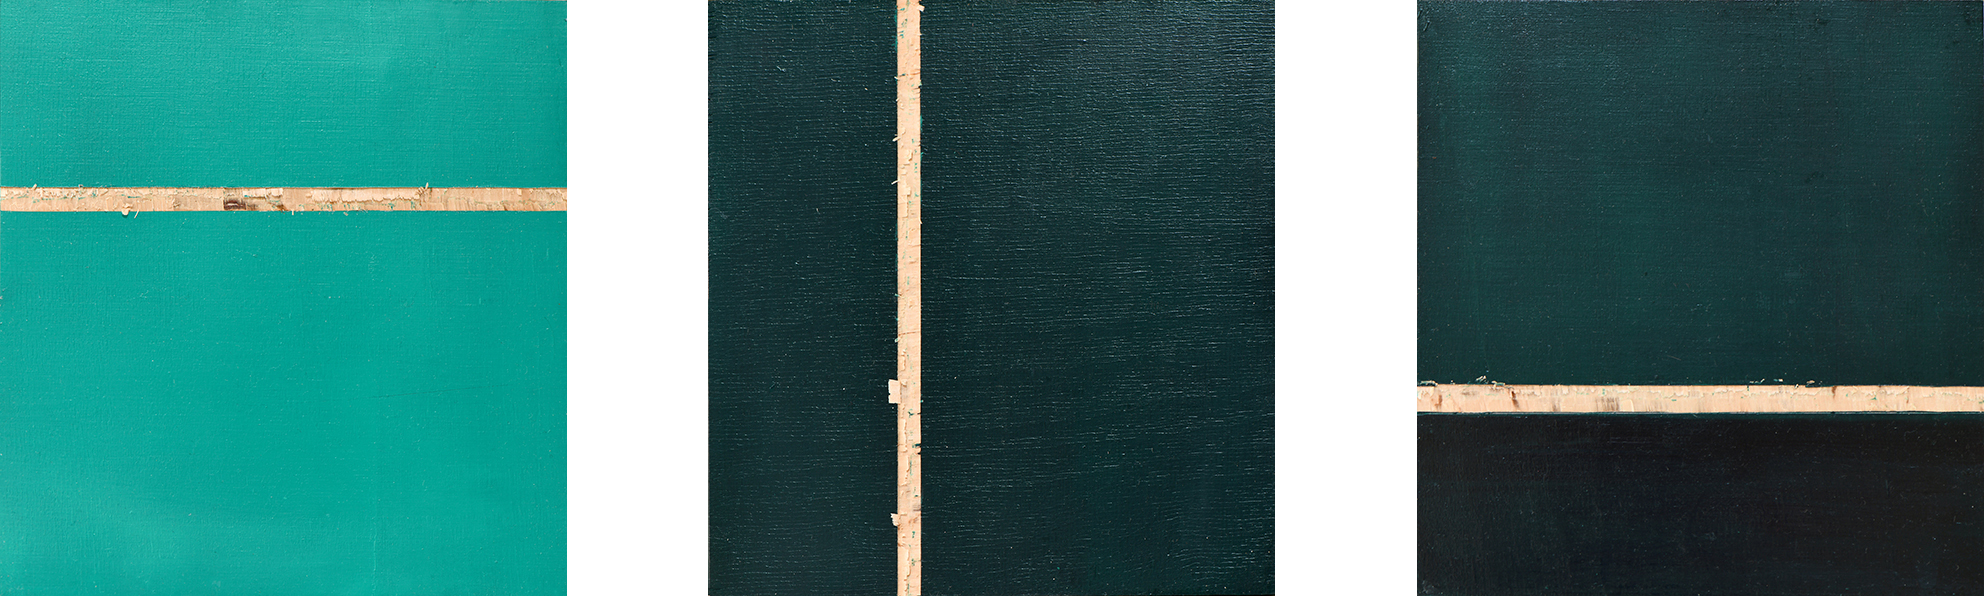 Phtalogrün Serie #1 I - III, Öl und Flachstich auf Schichtholzplatte, je 21 x 20 cm, 2020